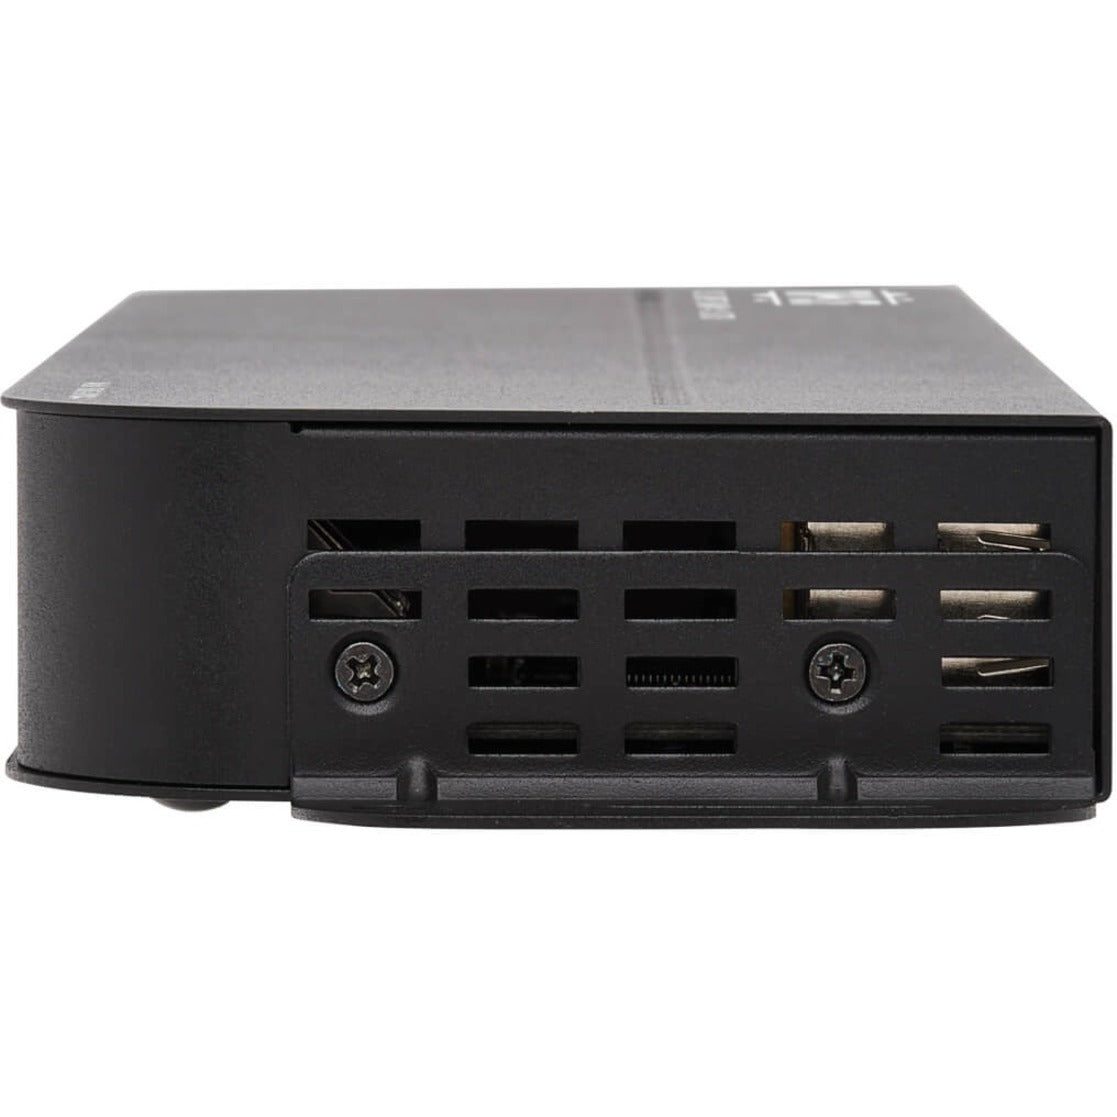 Tripp Lite B005-DPUA4 4-Port DisplayPort/USB KVM Switch, 4096 x 2160 Resolution, 3-Year Warranty